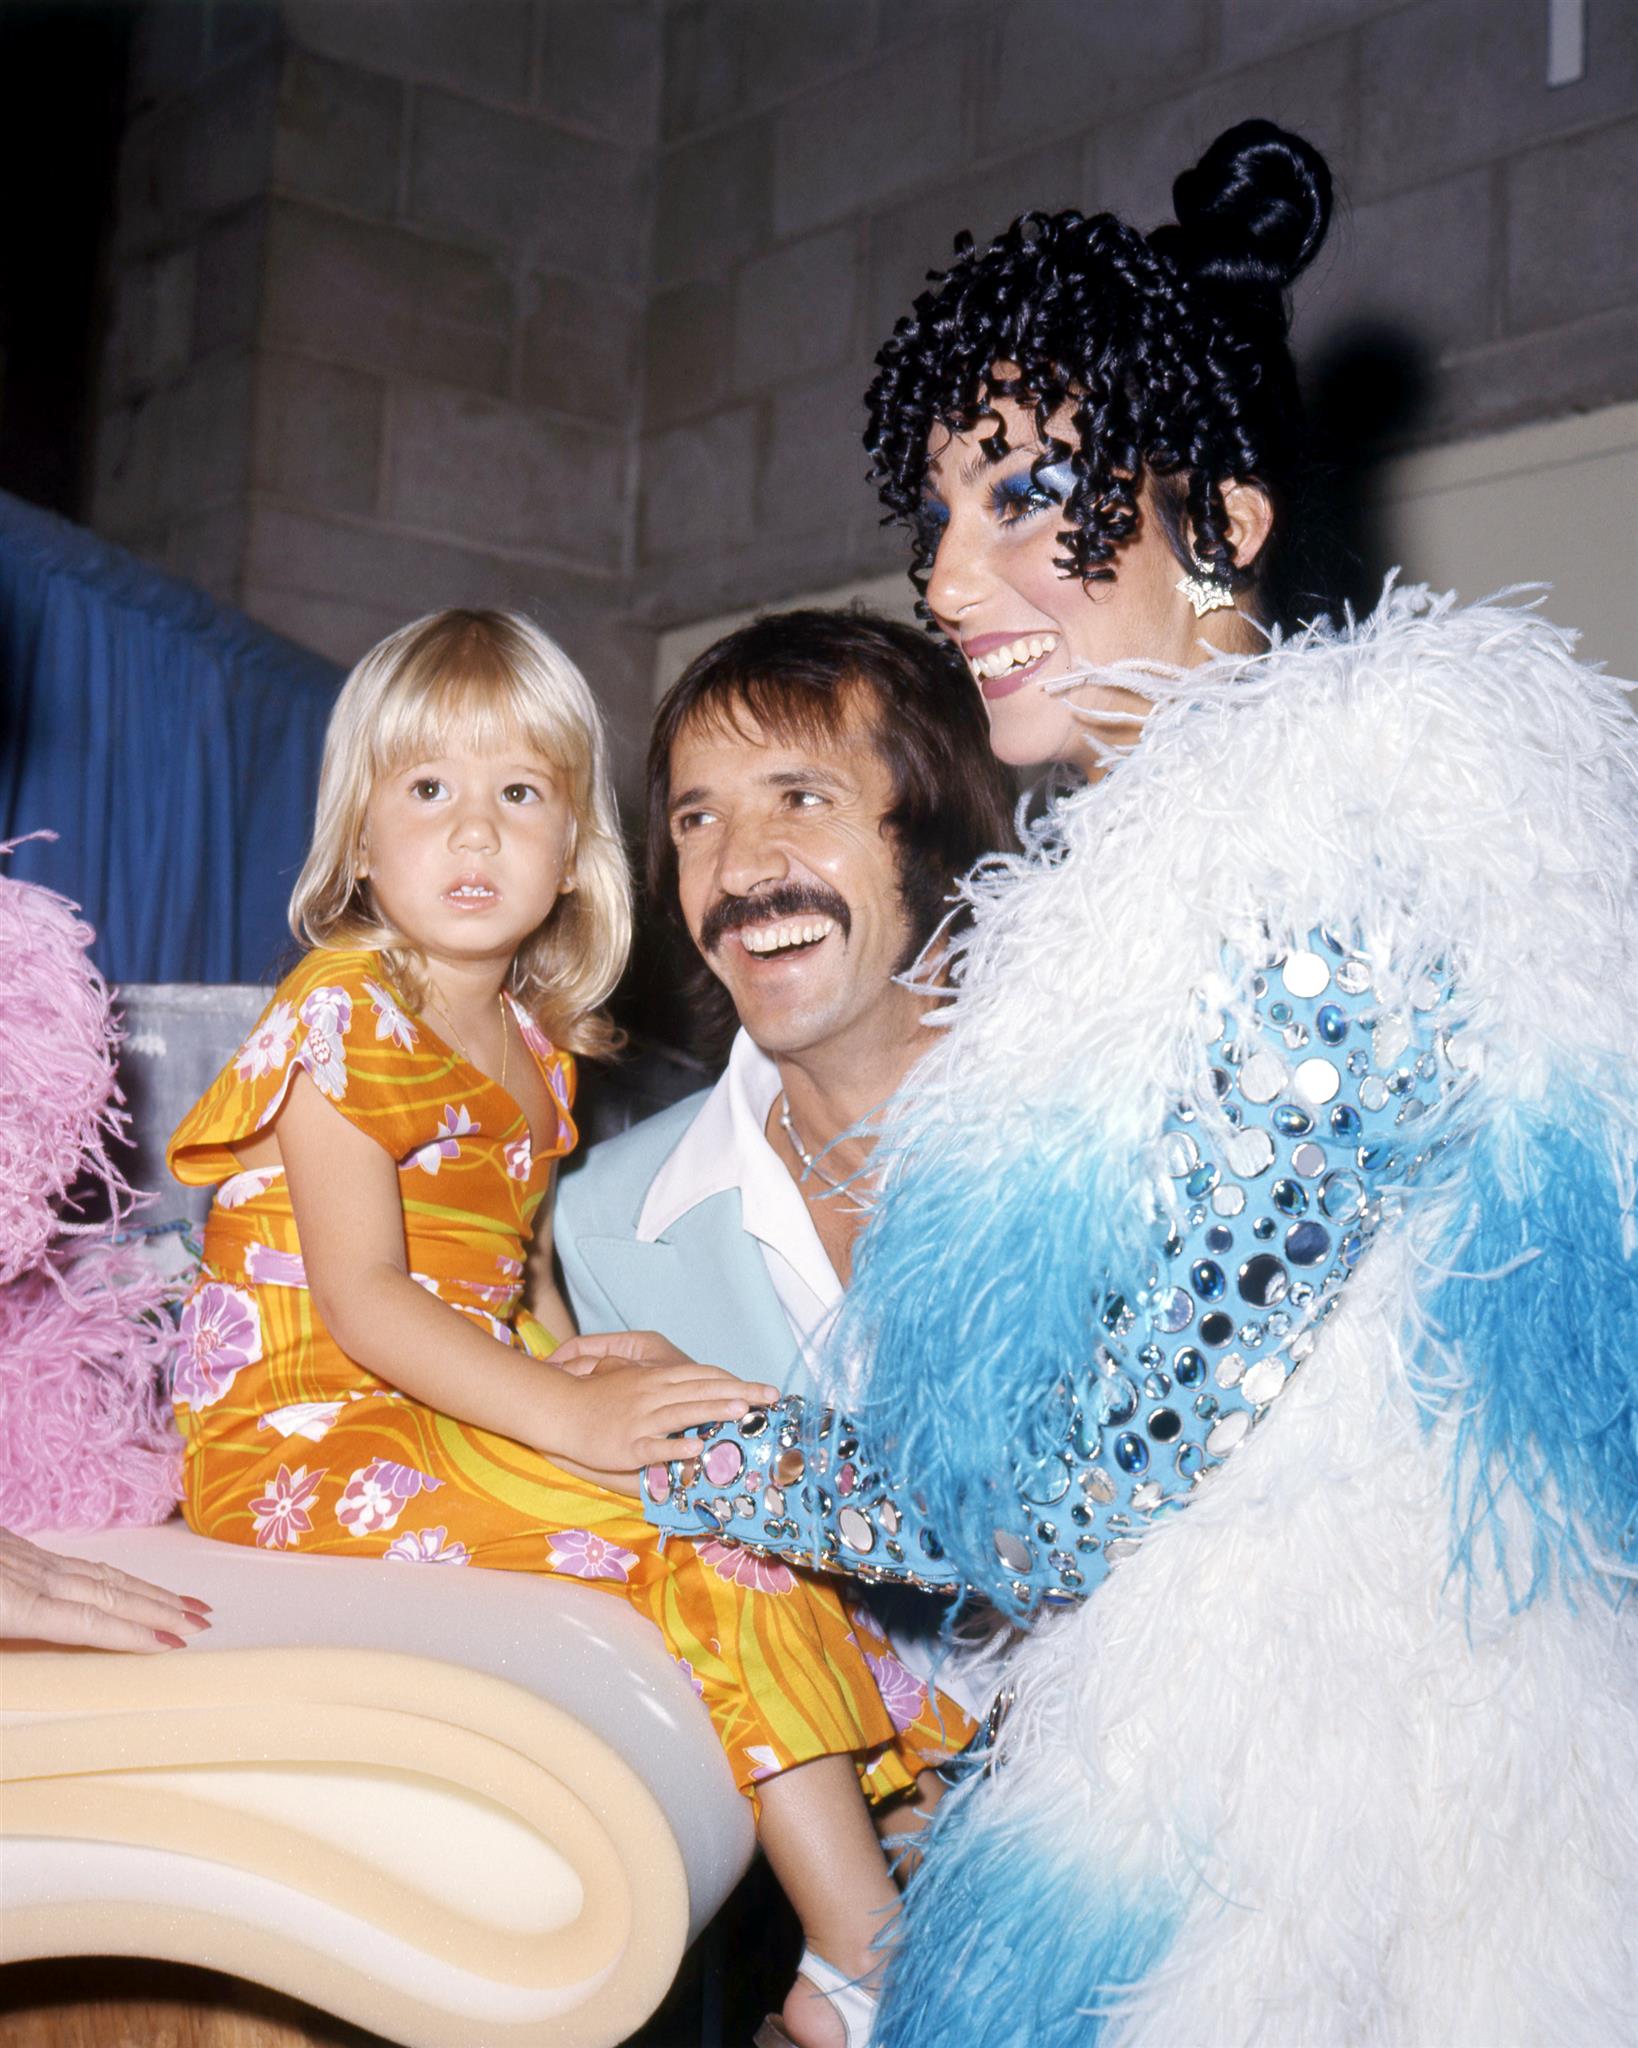 Duo de chanteurs américains Sonny & Cher avec leur fille Chastity (plus tard Chaz), vers 1973. | Source: Getty Images.